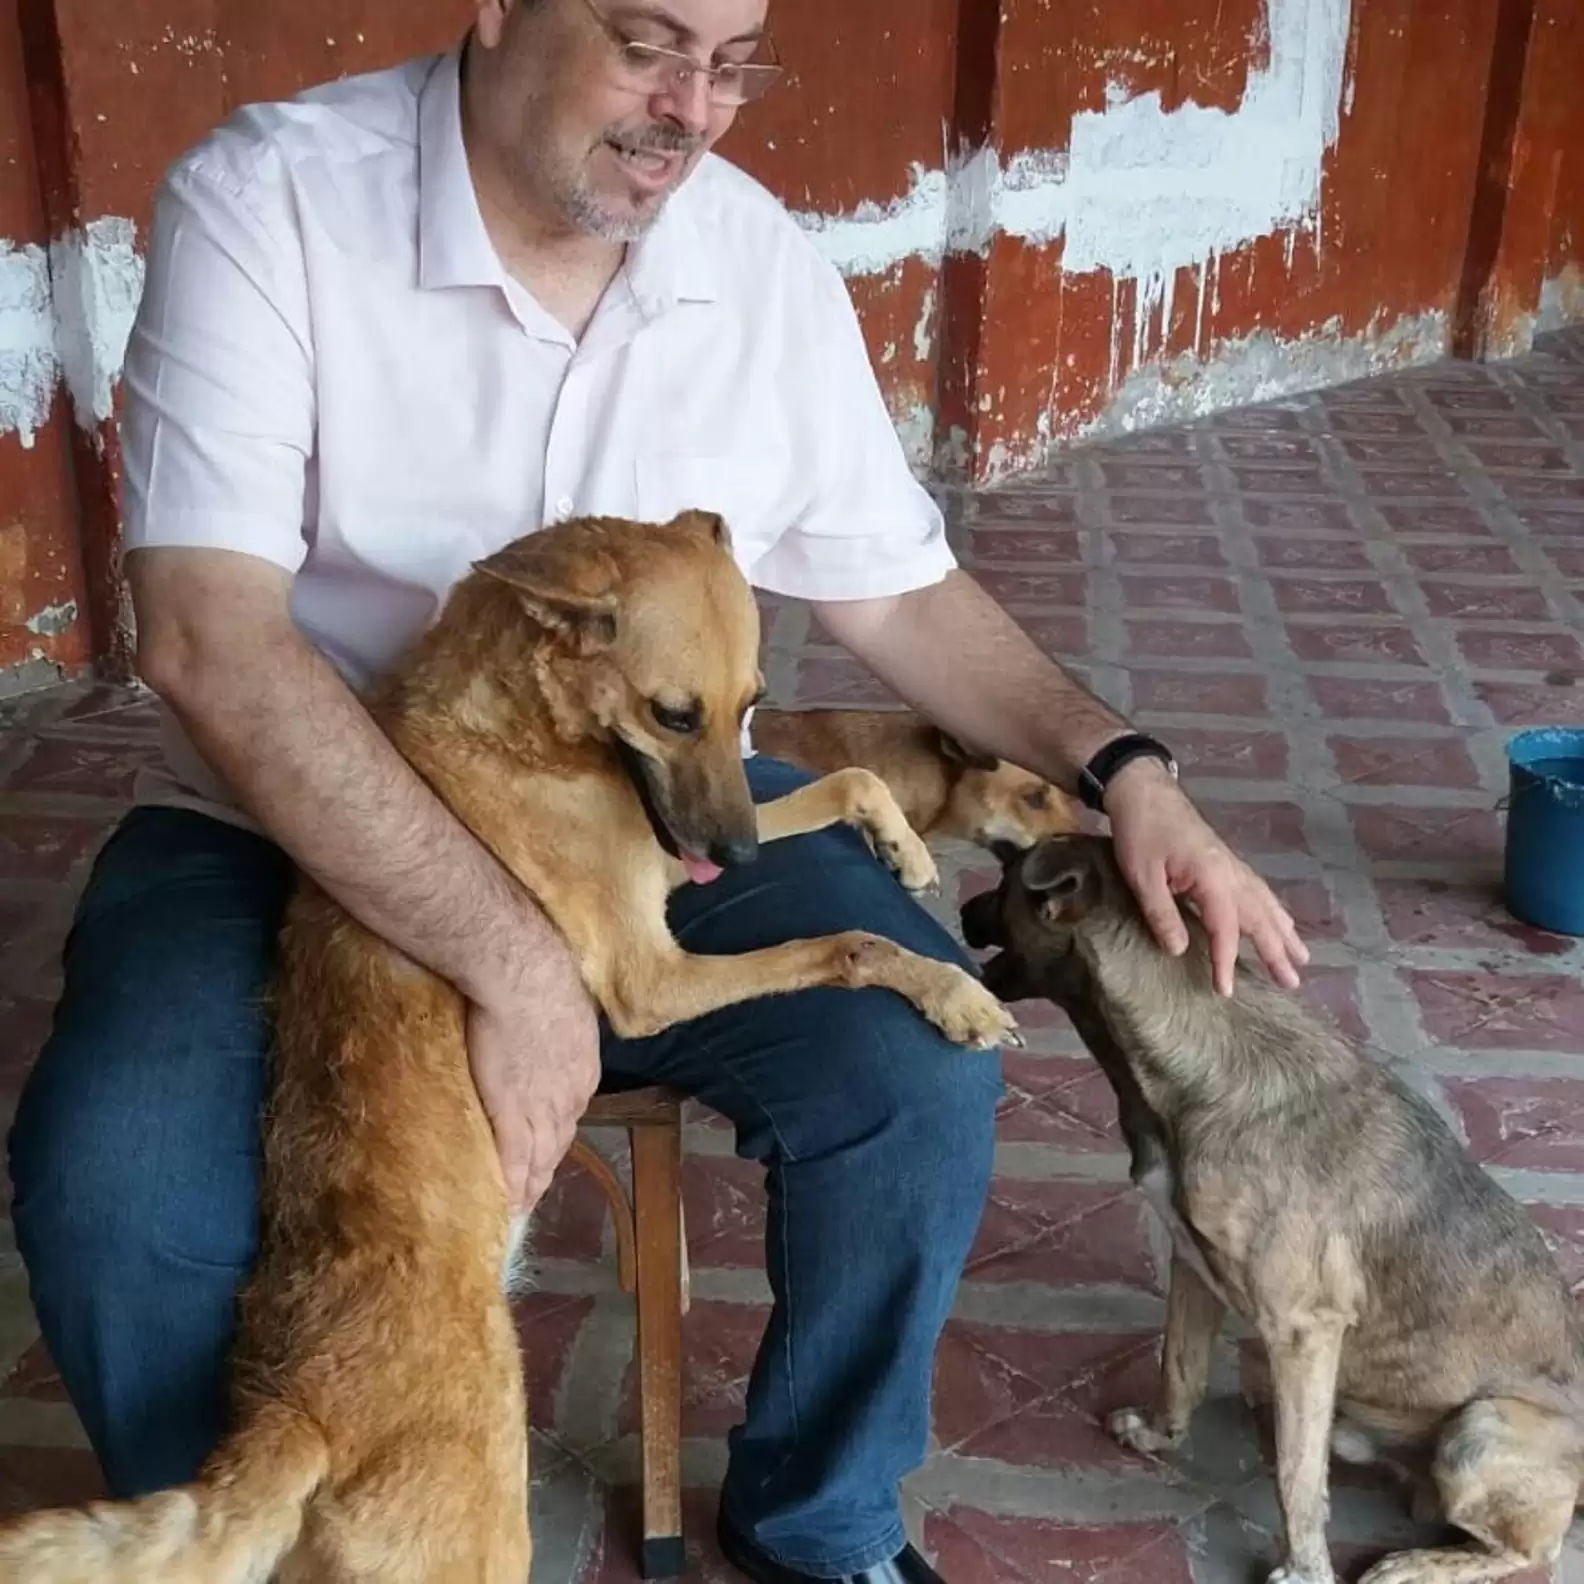 นักบวชชาวบราซิลพาสุนัขจรจัดมาร่วมพิธีมิสซาทุกครั้ง เพื่อหาบ้านที่อบอุ่นให้กับน้อง